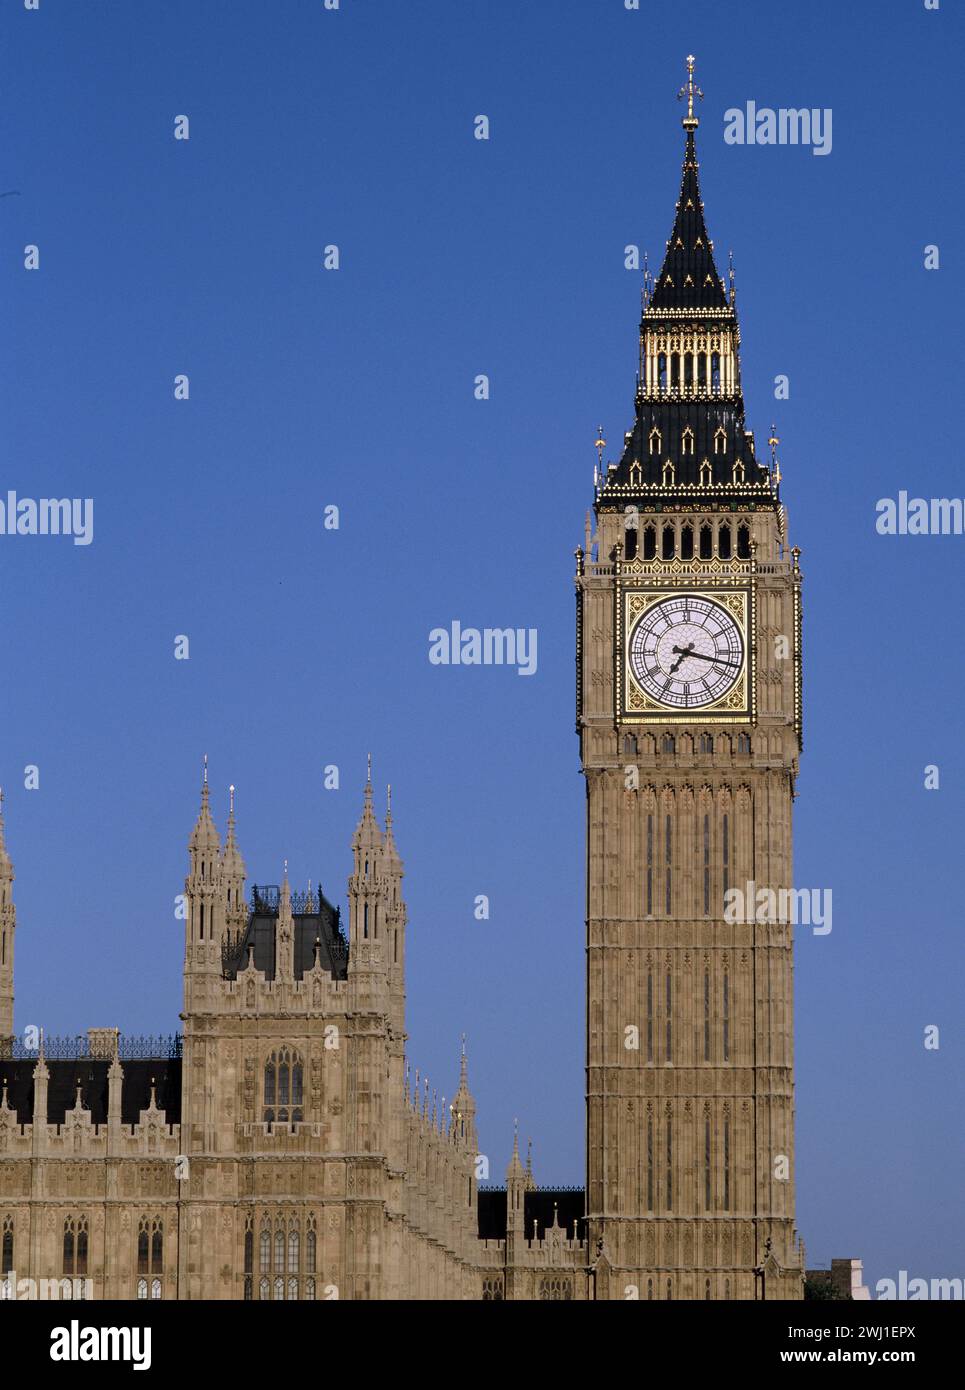 Vereinigtes Königreich. England. London. Nahaufnahme der Big Ben Glocke Uhr Elizabeth Tower. Stockfoto